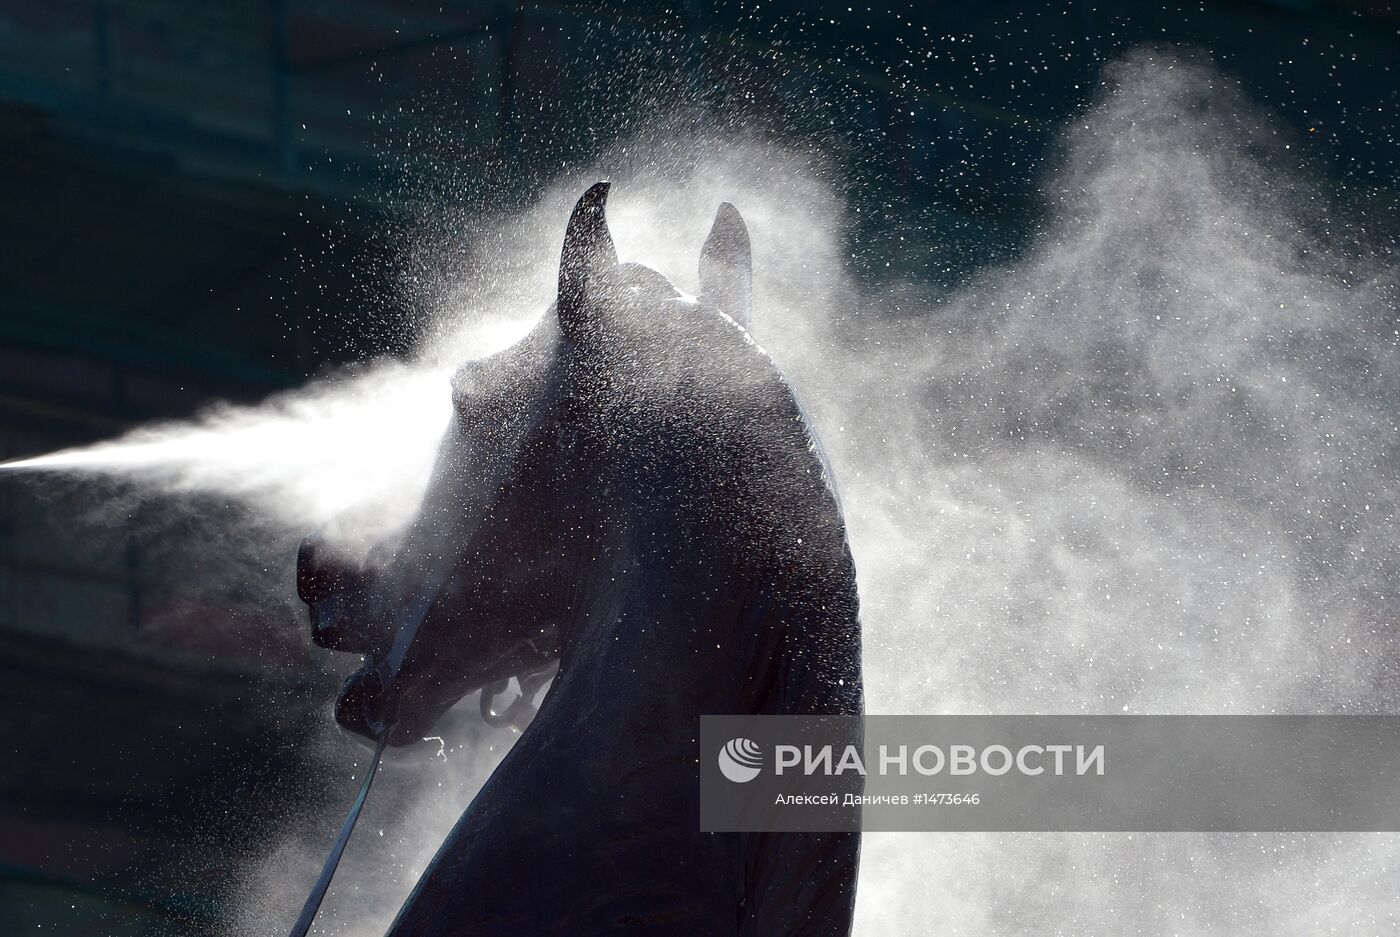 Купание коней Клодта на Аничковом мосту в Санкт-Петербурге